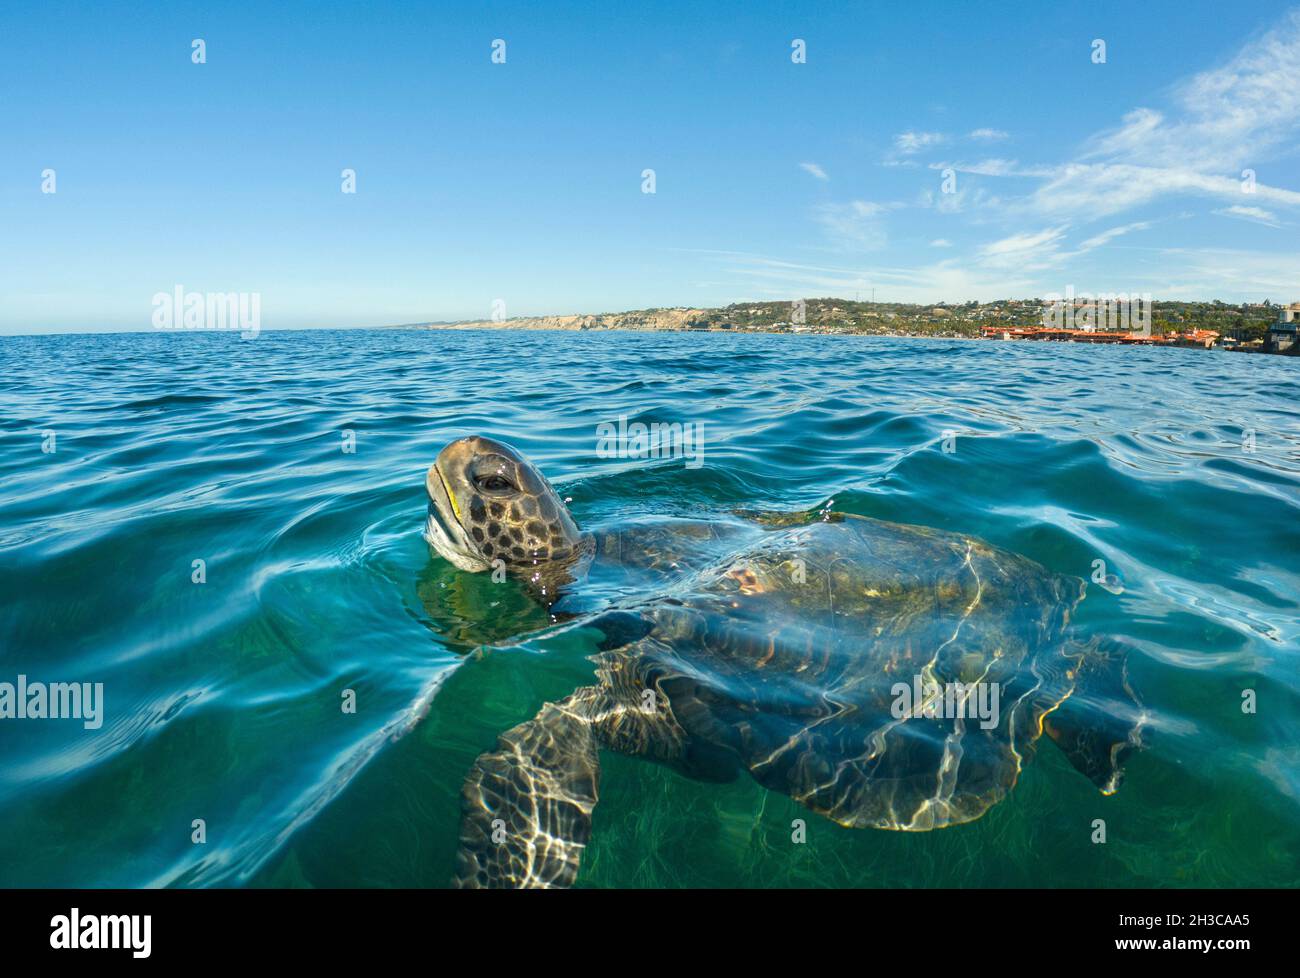 San Diego, Californie, États-Unis.20 octobre 2021.Une tortue de mer verte  du Pacifique est vient pour l'air dans l'anse de la Jolla où une petite  colonie de tortues s'est installée.Les tortues semblent être